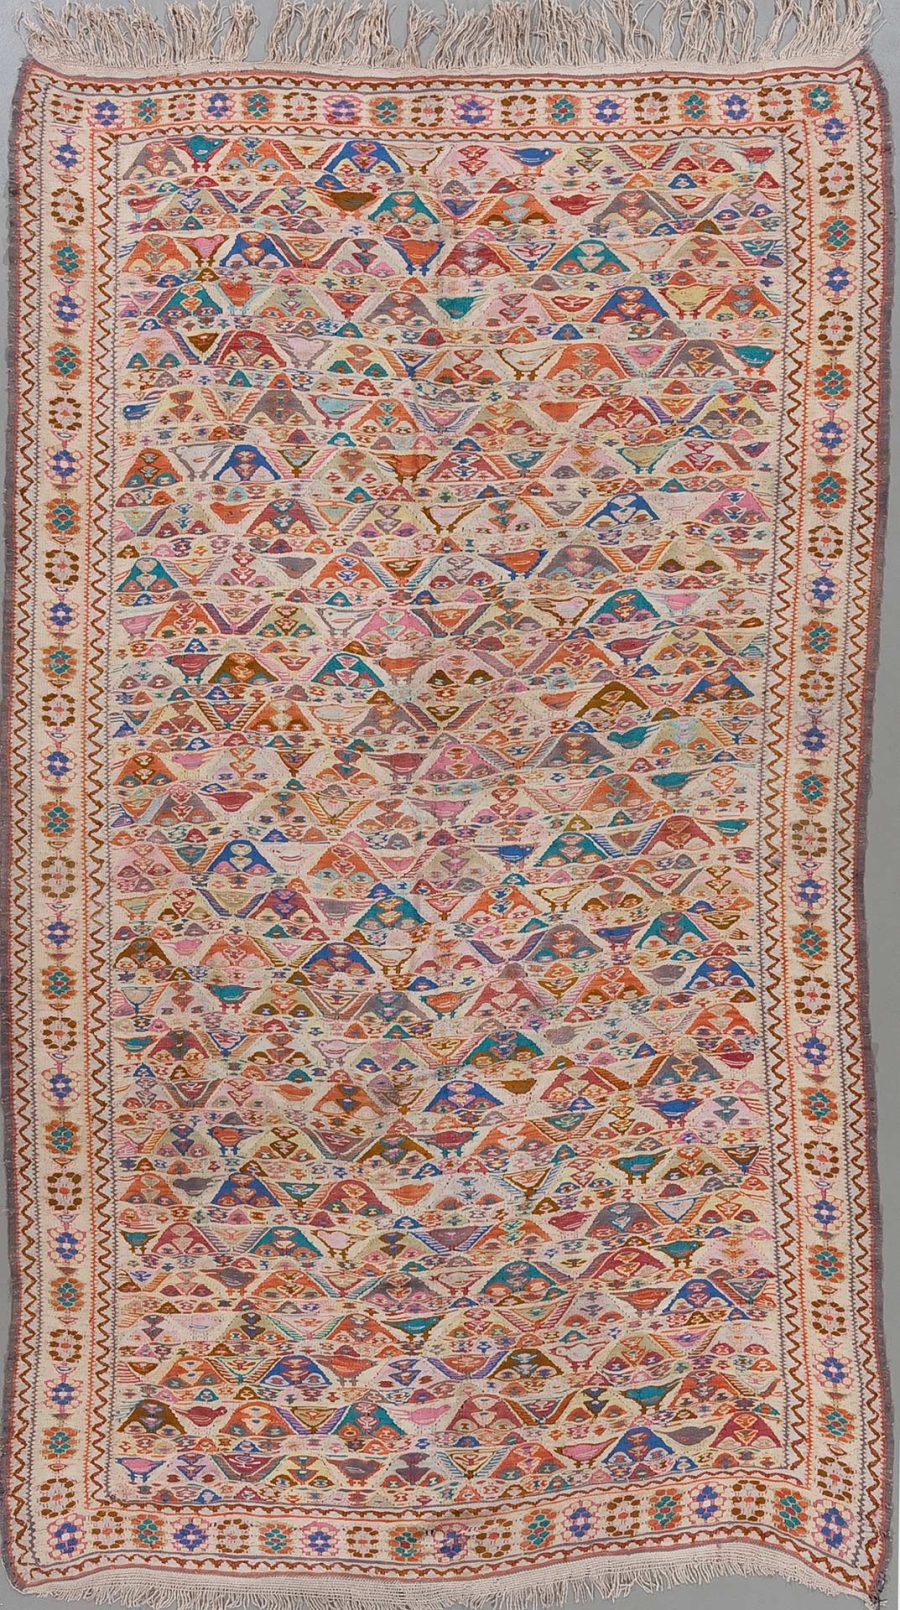 Handgewebter Teppich mit komplexem, geometrischem Muster und vielfältiger Farbpalette, umrahmt von dekorativen Bordüren und versehen mit Fransen an den kurzen Enden.